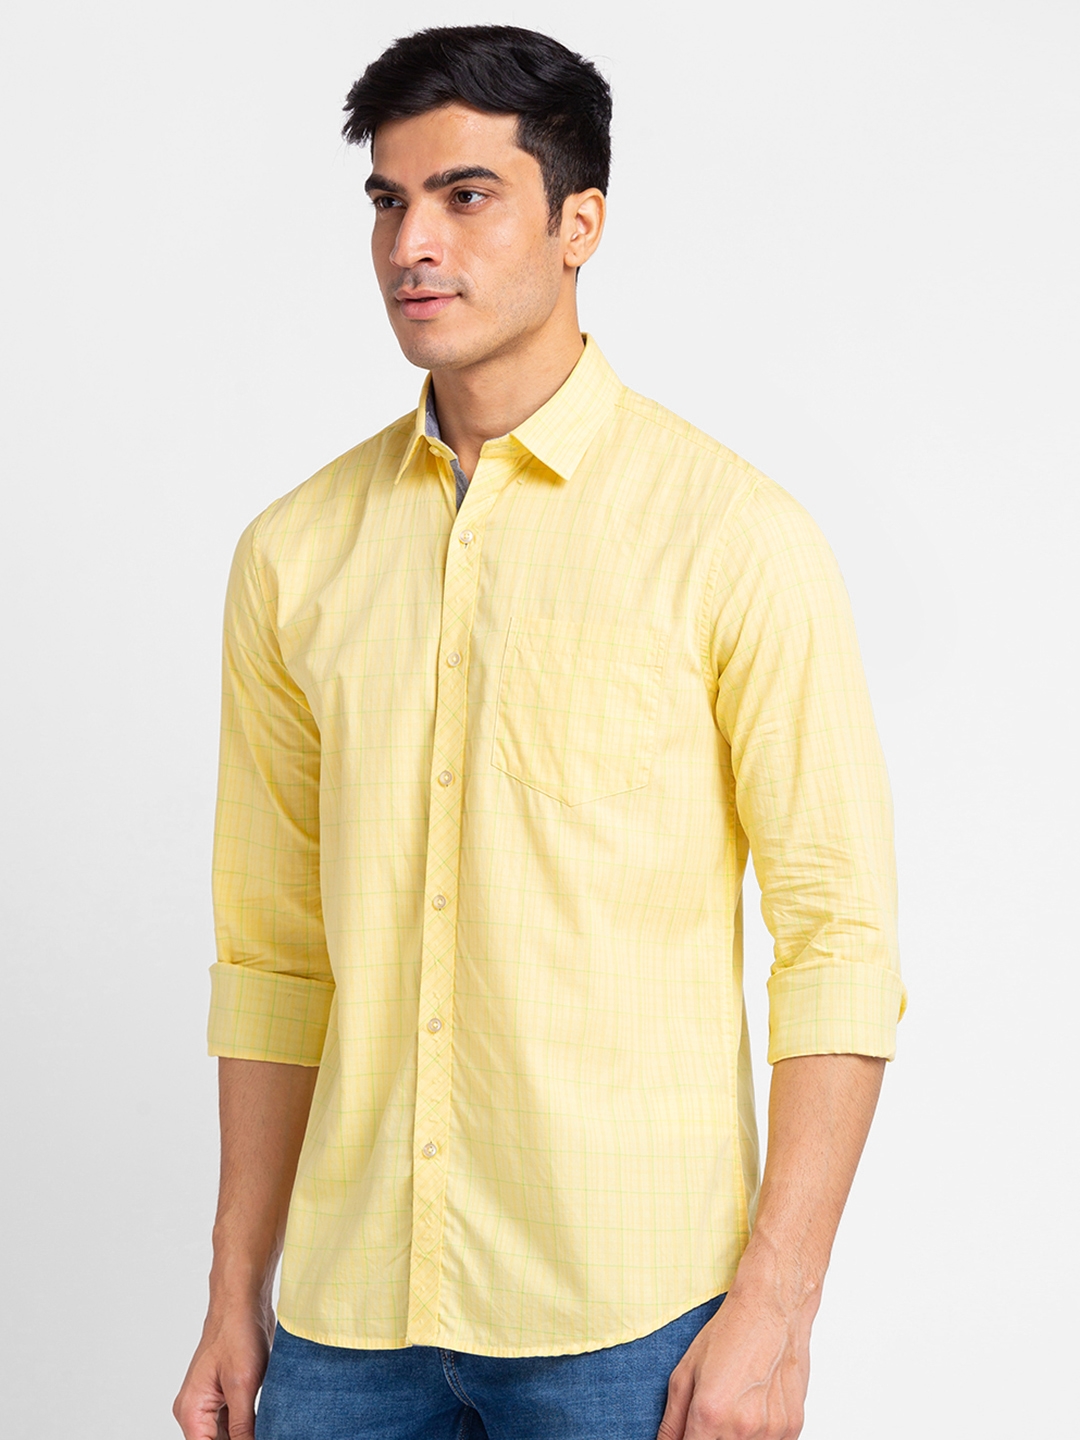 Globus Yellow Checked Shirt